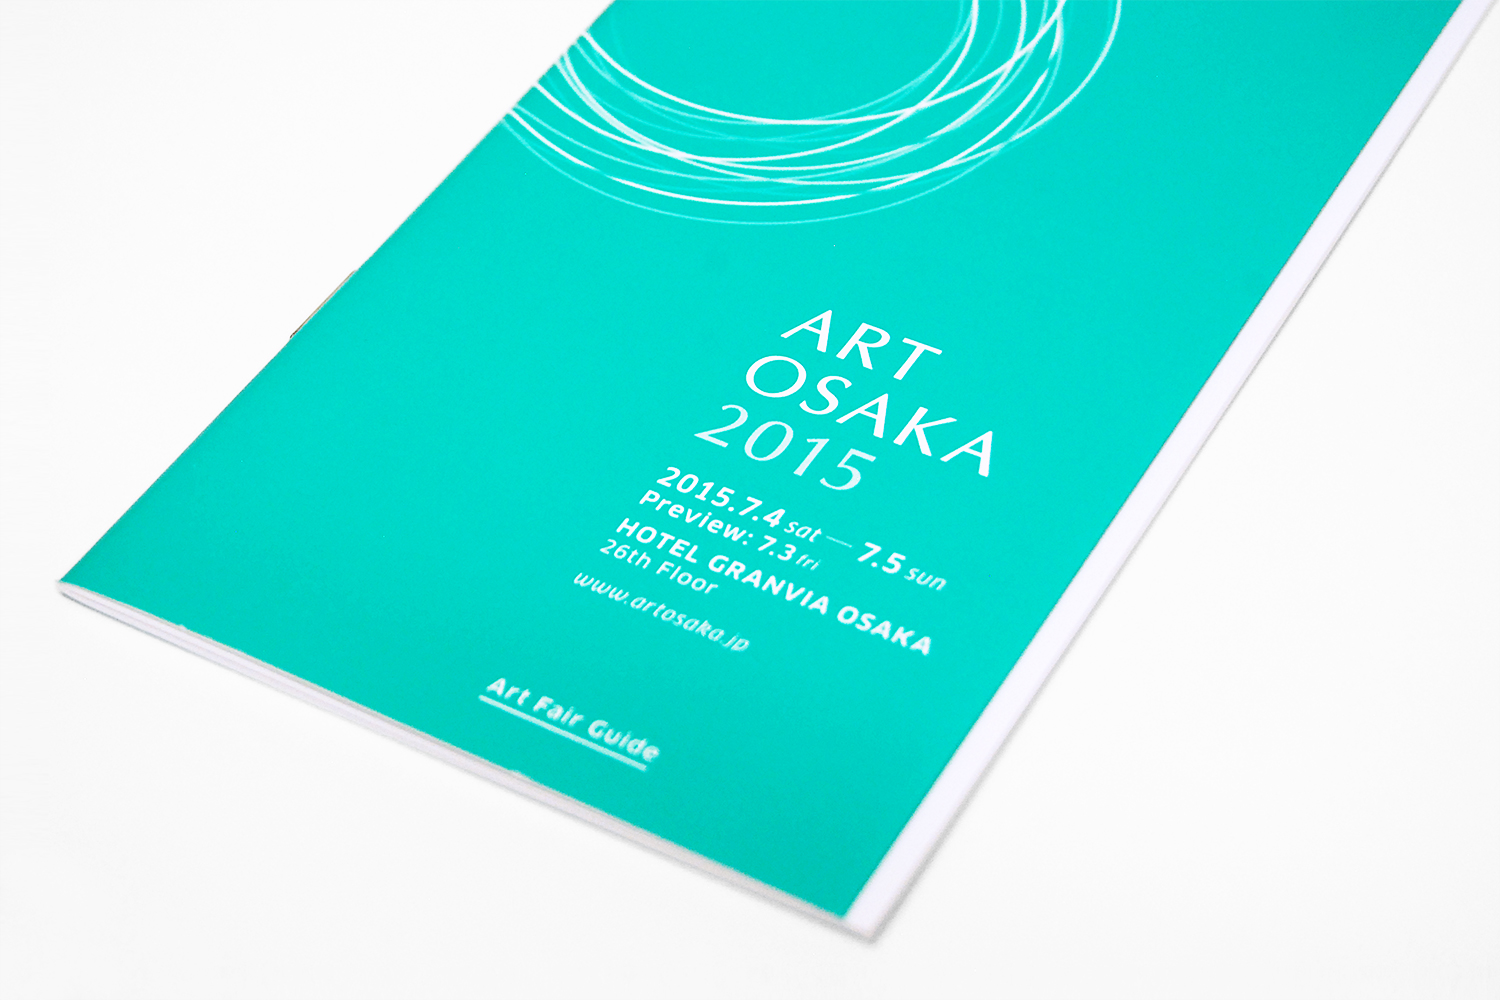 ART OSAKA 2015